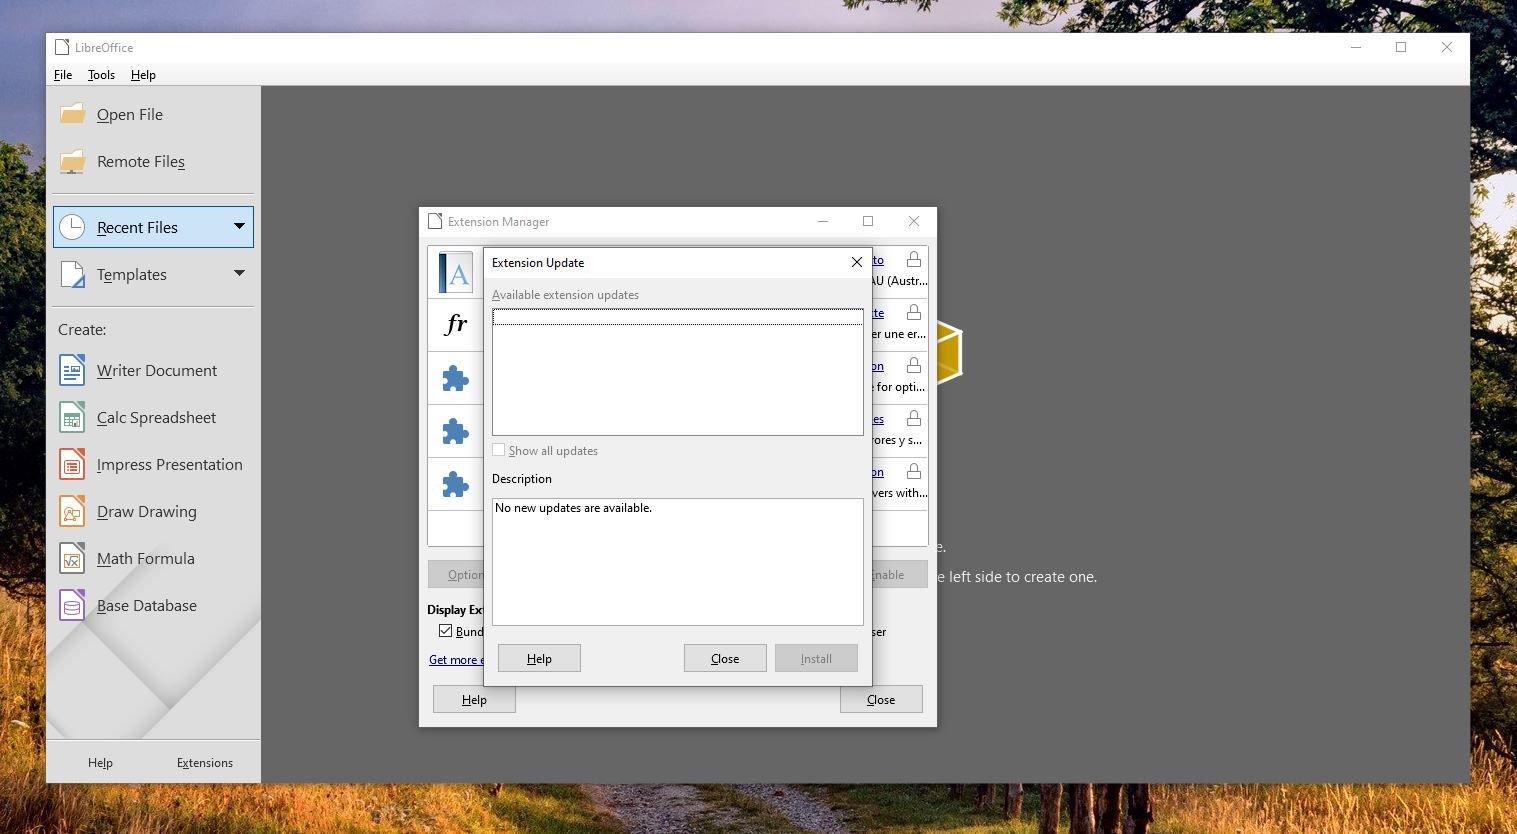 Captura de tela de atualizações de extensão no LibreOffice